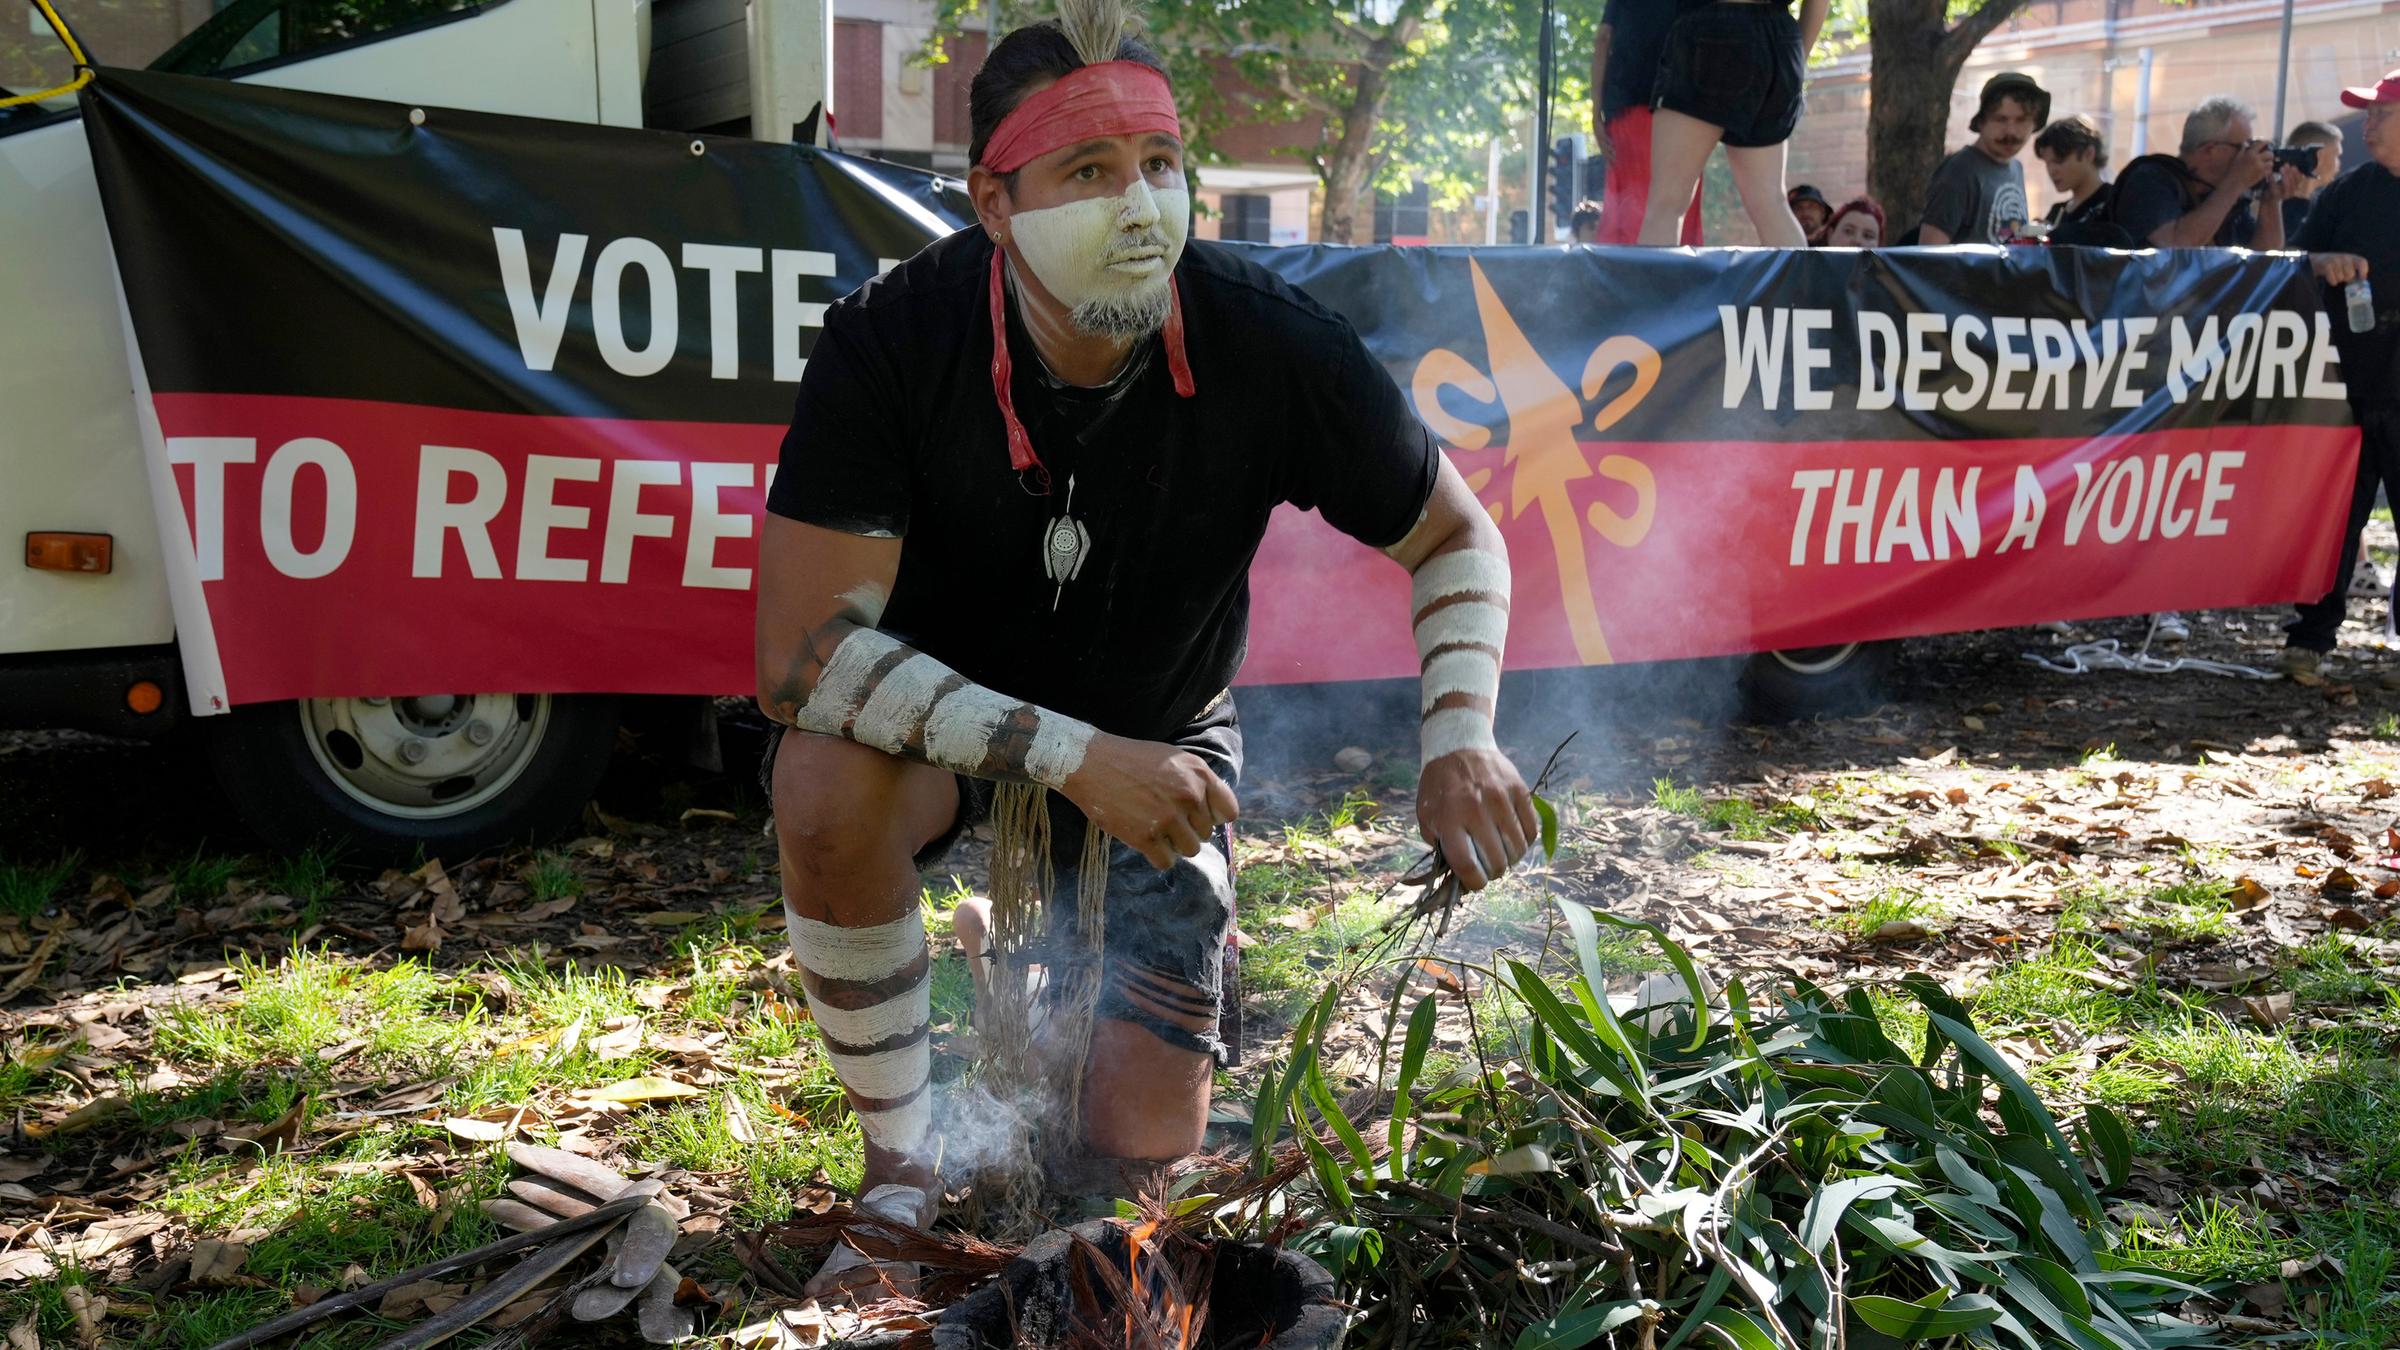 Ein Aboriginal mit weißer Gesichtsbemalung entfacht ein zeremonielles Feuer. Hinter ihm steht auf einem Spruchband: "We deserve more than a voice." 